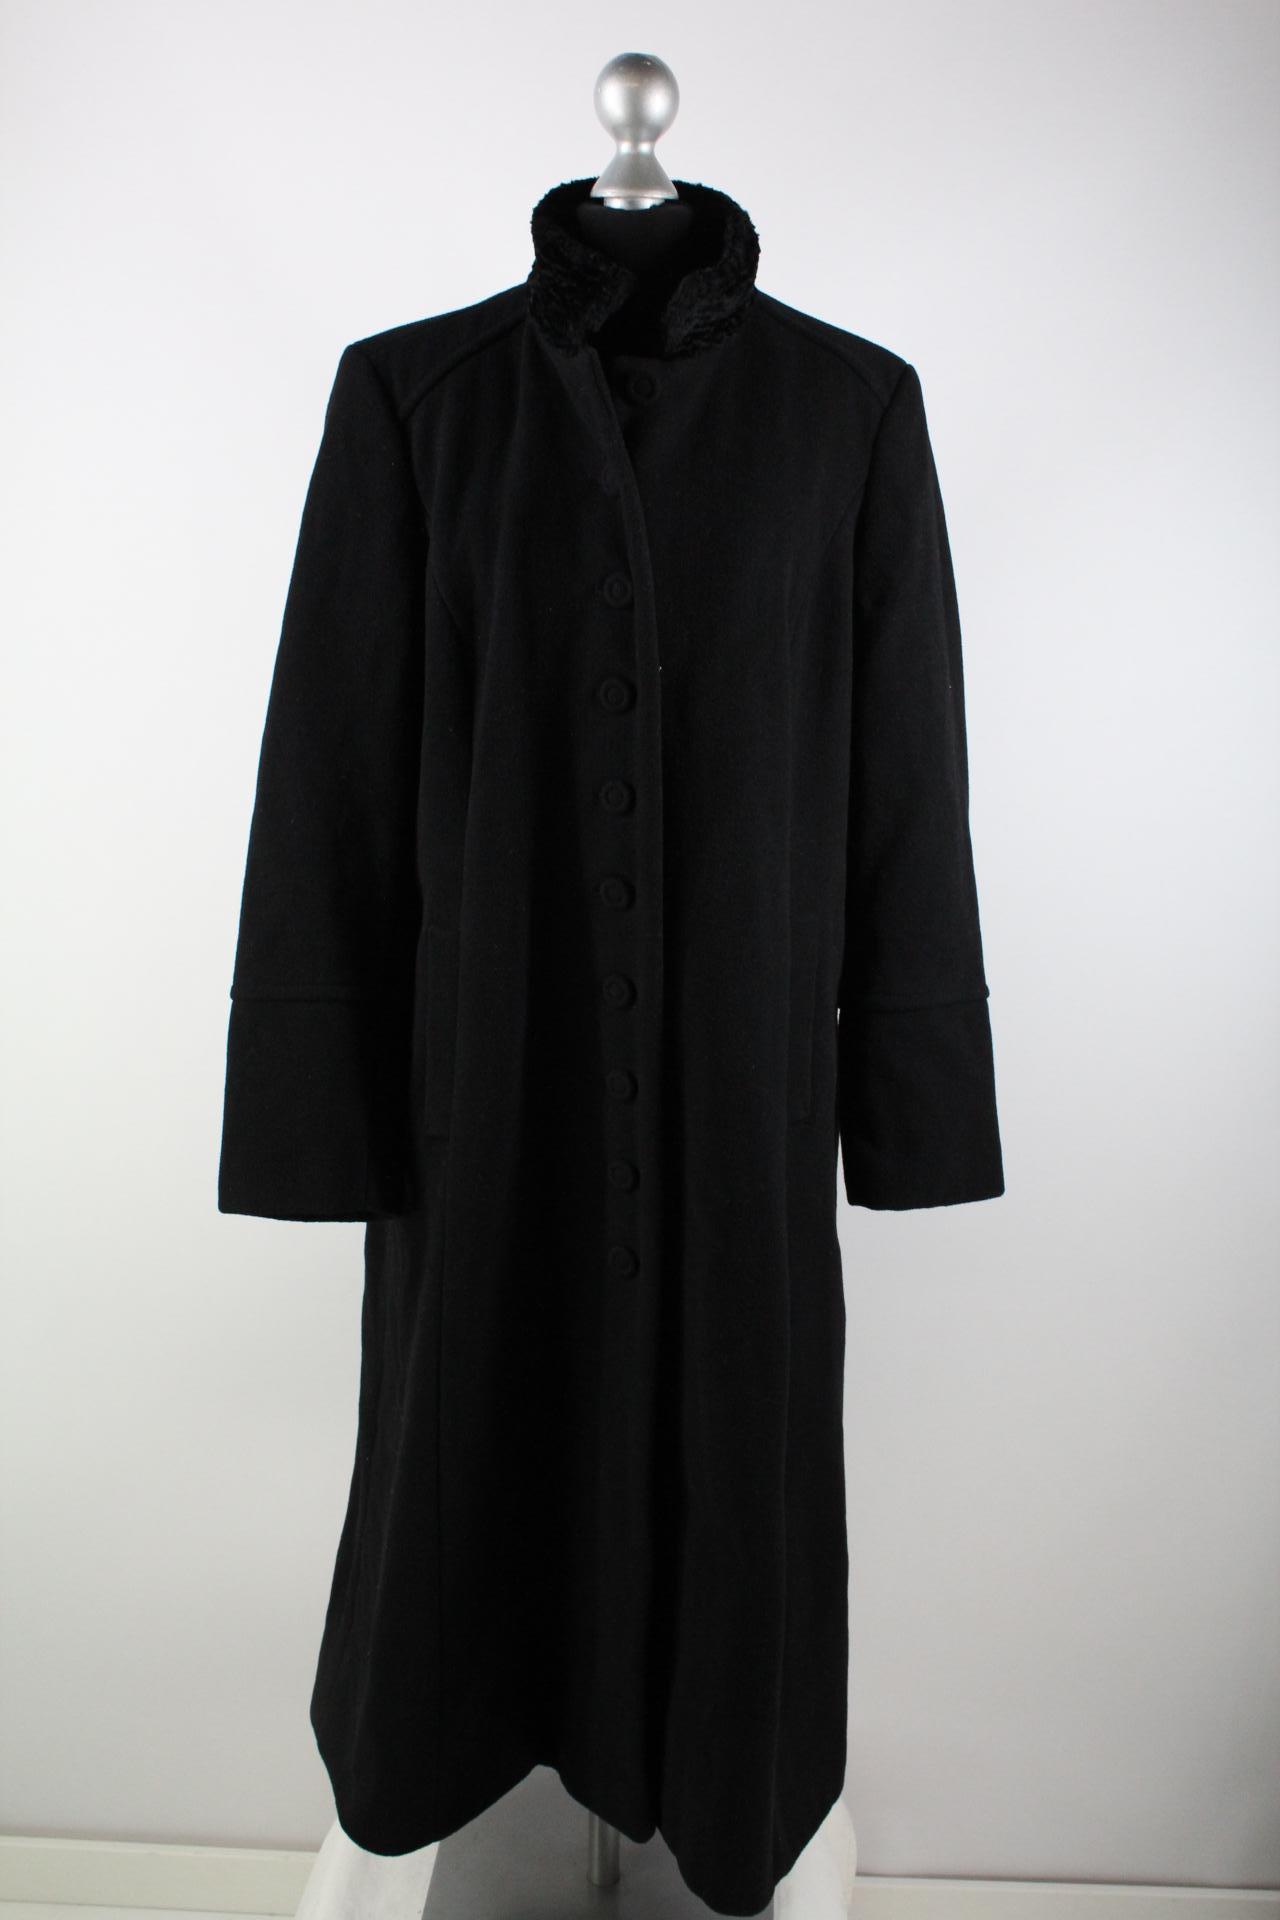 Biaggini Damen-Mantel schwarz Größe 42